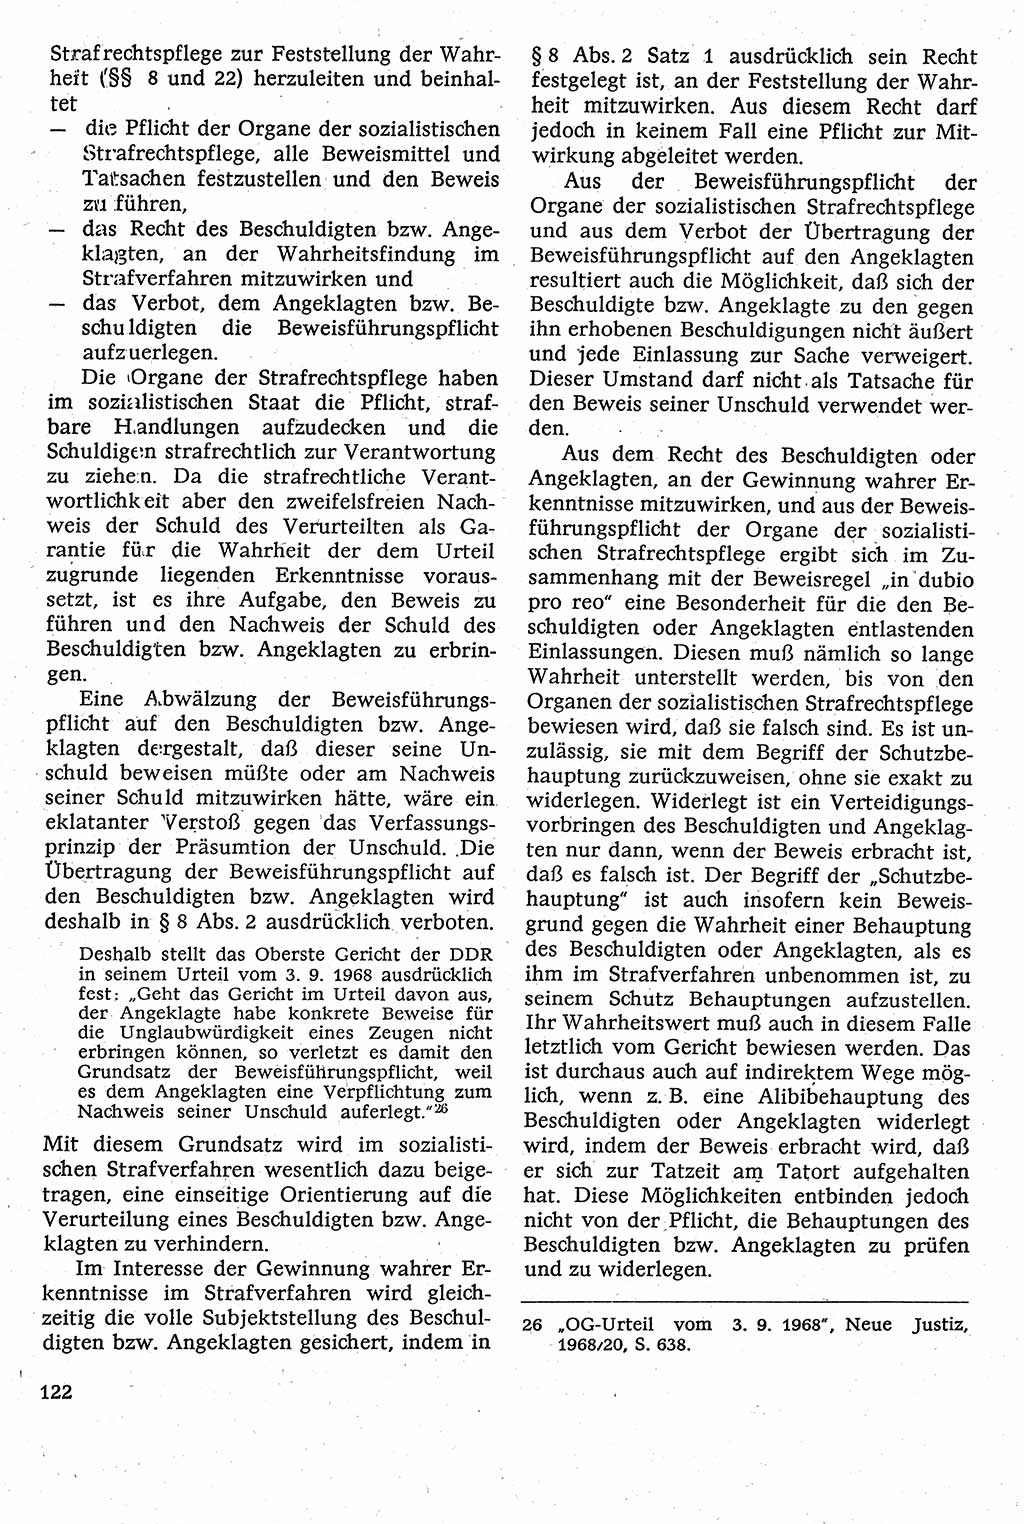 Strafverfahrensrecht [Deutsche Demokratische Republik (DDR)], Lehrbuch 1982, Seite 122 (Strafverf.-R. DDR Lb. 1982, S. 122)